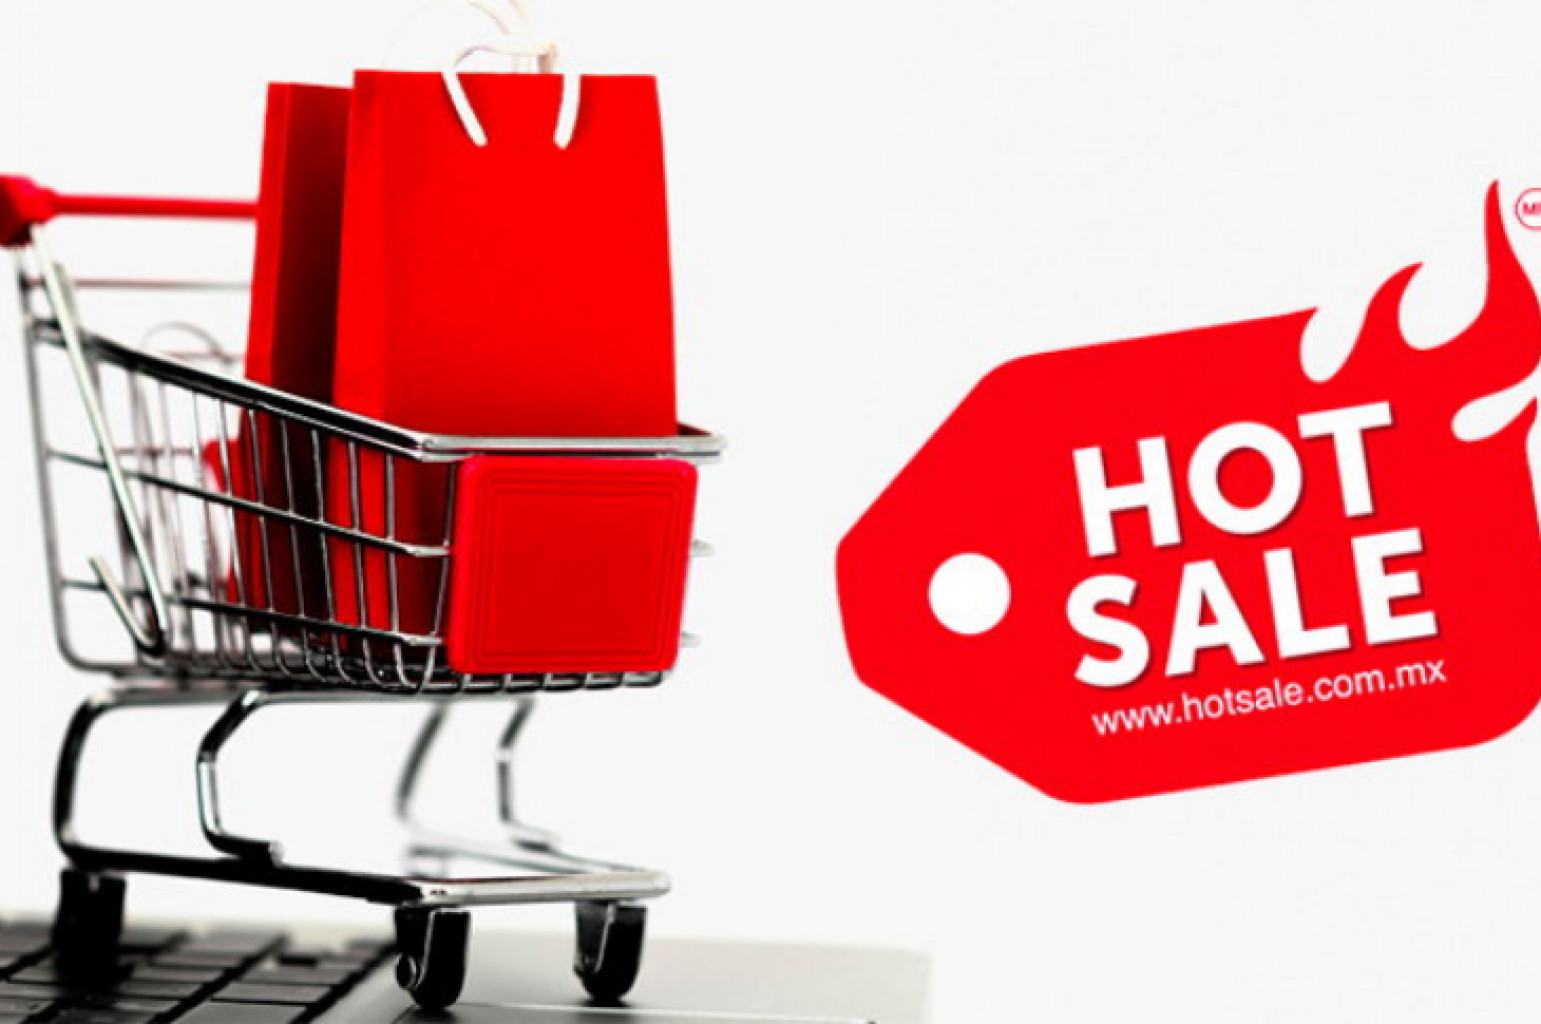 Profeco da tips para compras seguras en Hot Sale